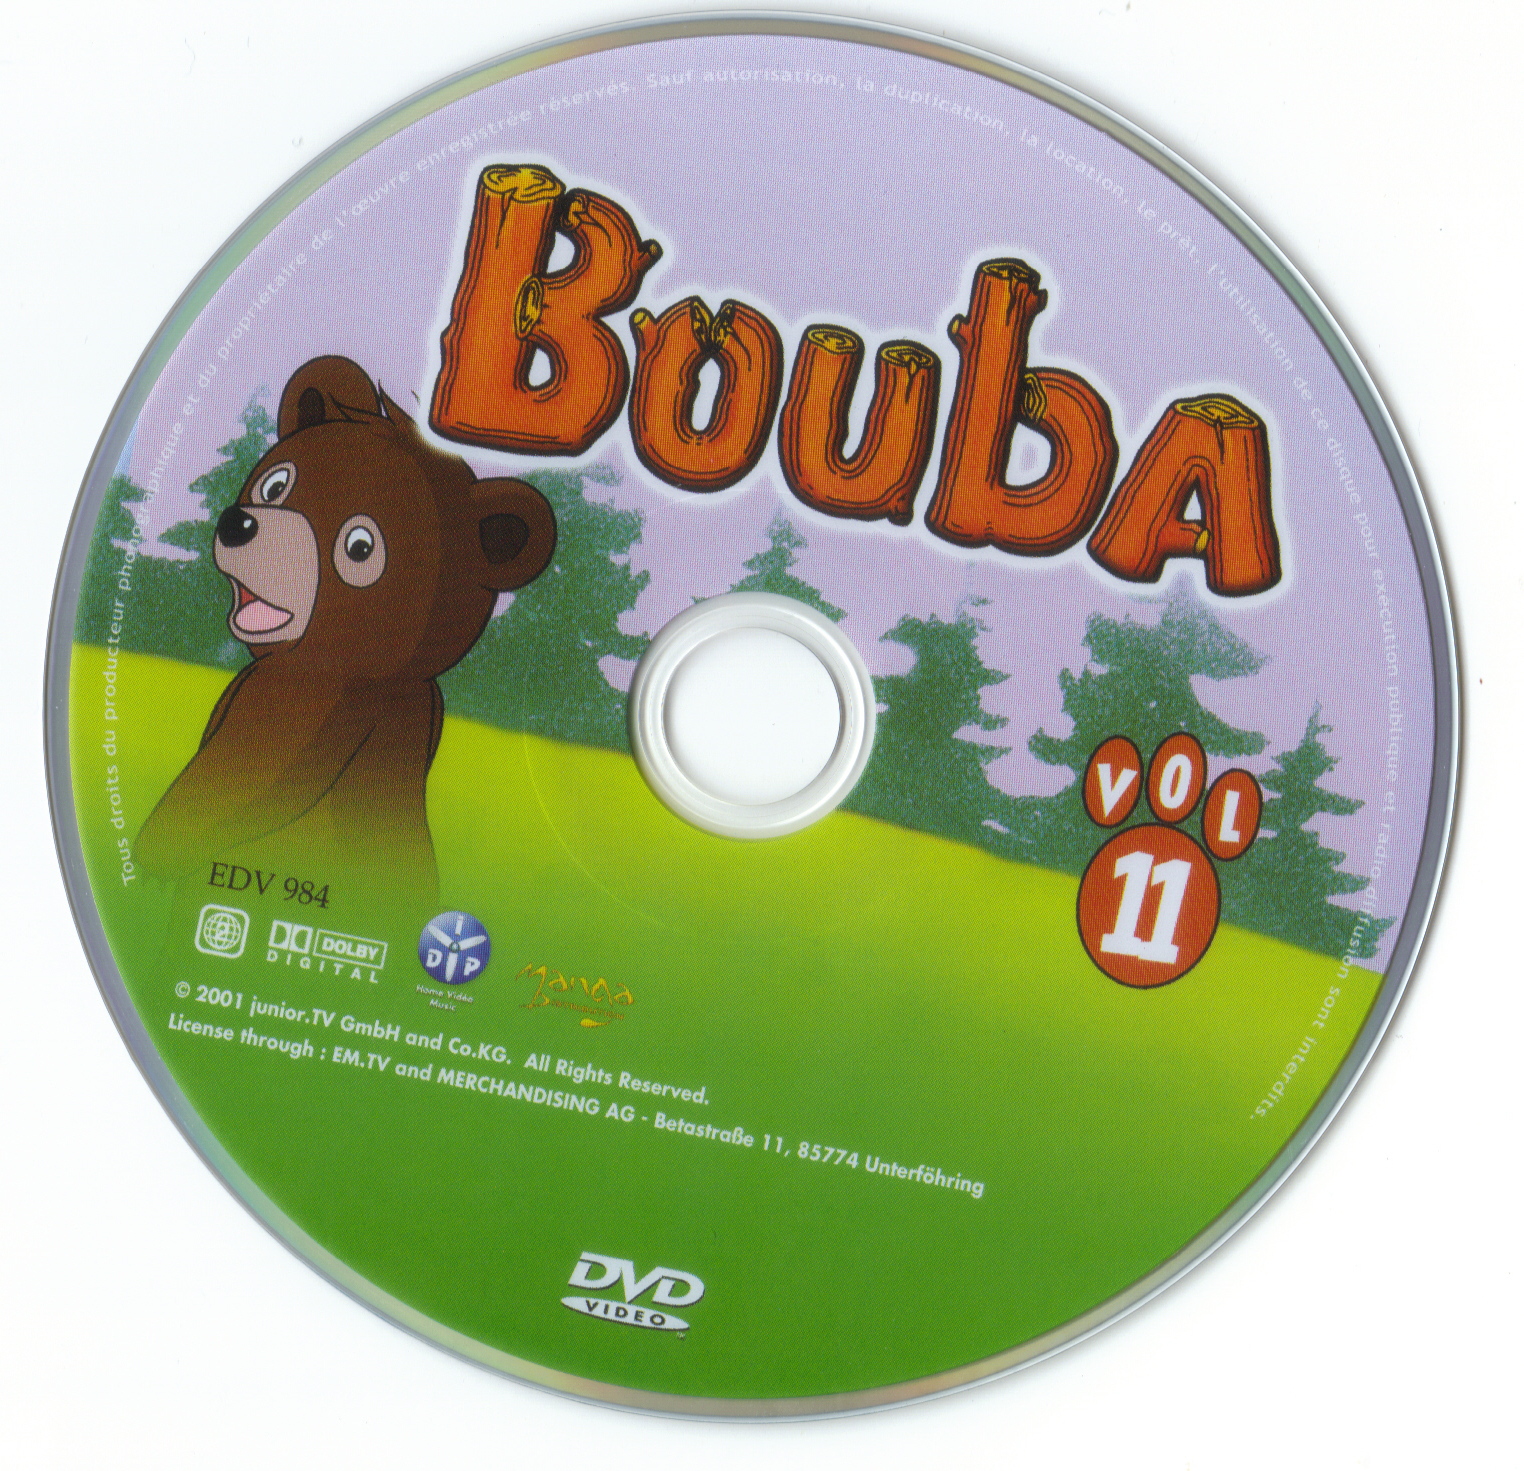 Bouba vol 11